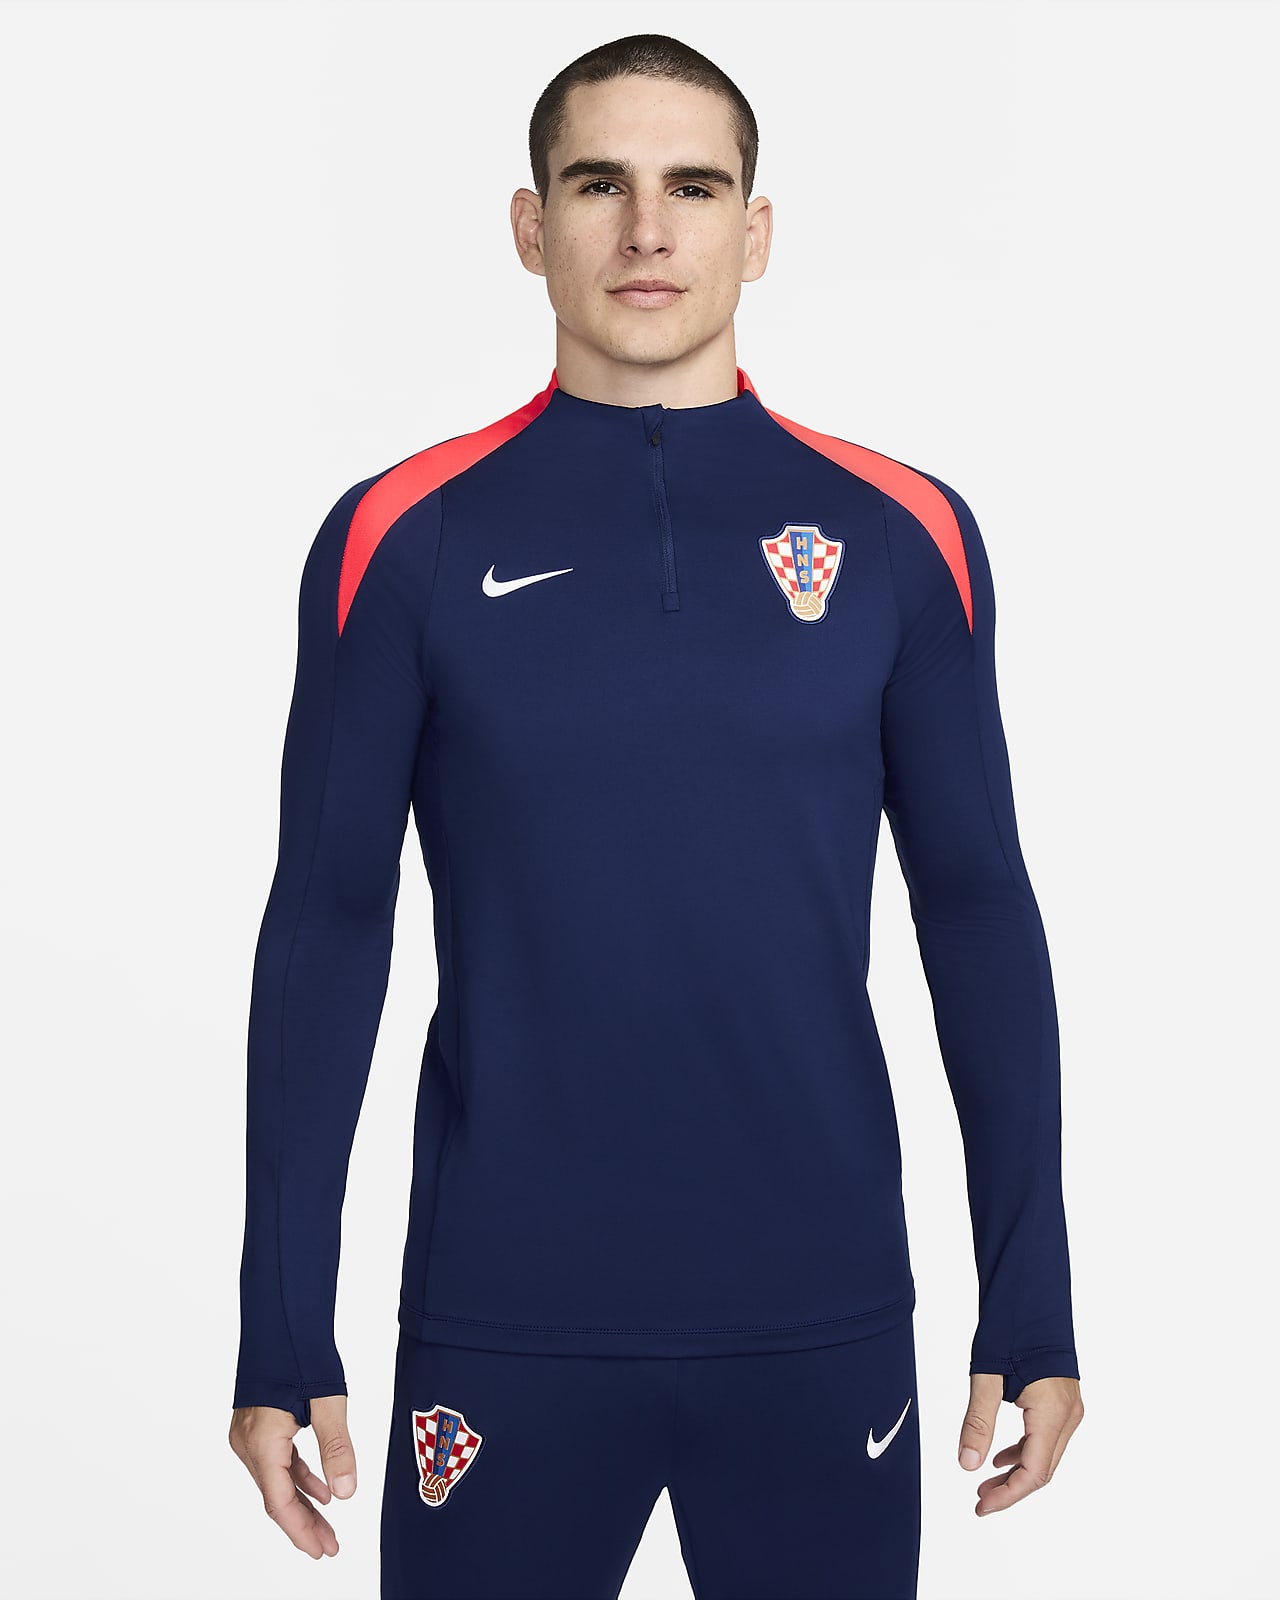 Croacia Strike Camiseta de entrenamiento de fútbol Nike Dri-FIT - Hombre